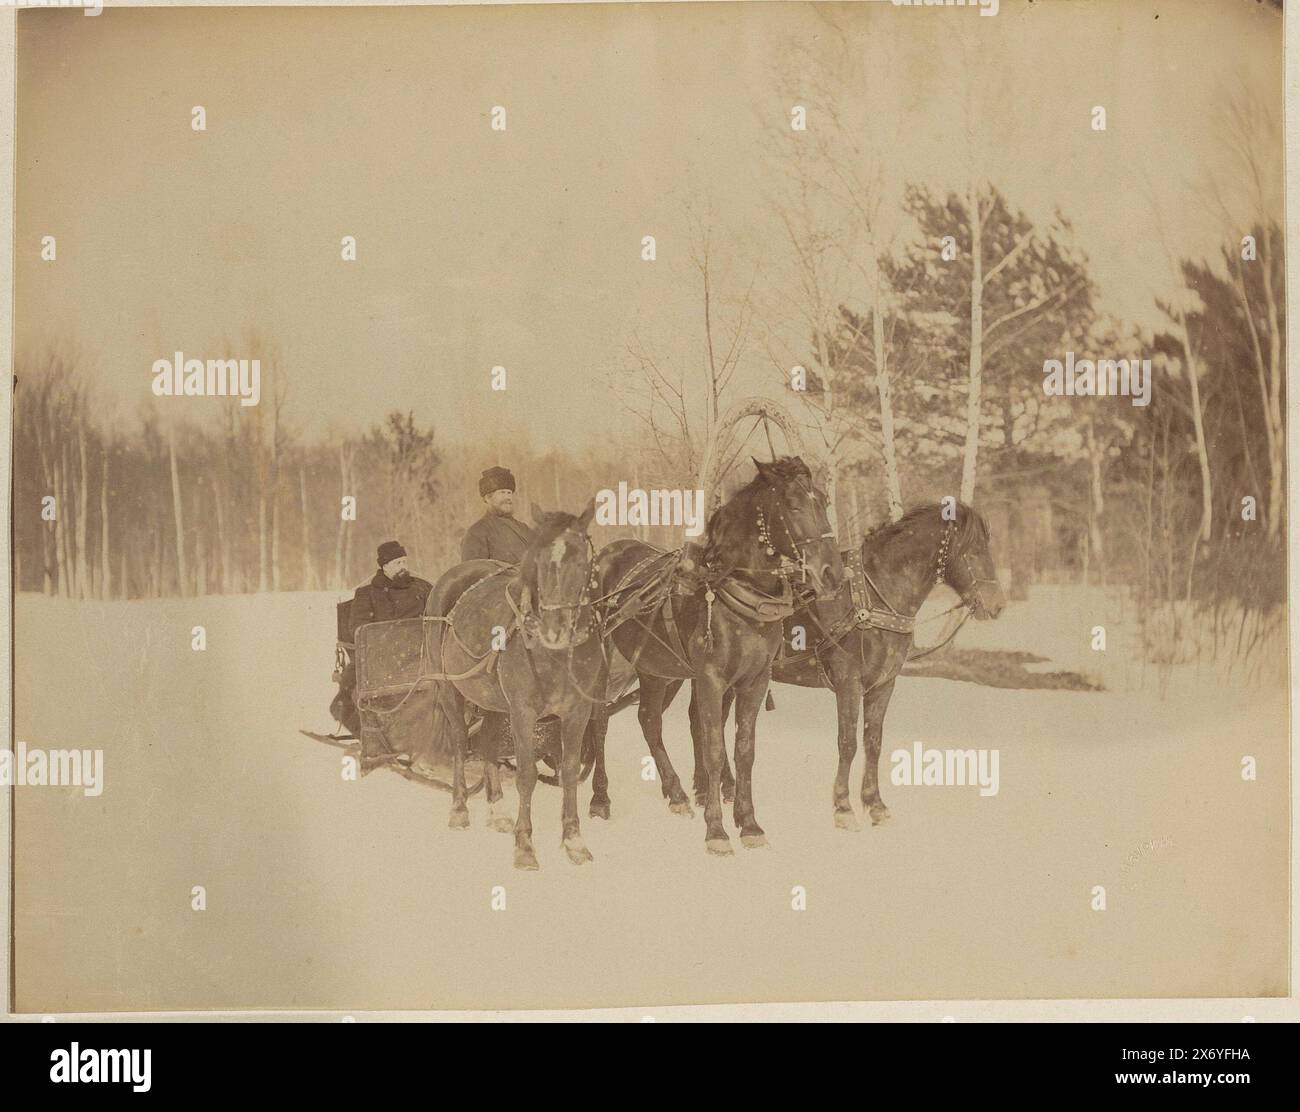 Troïka avec trois chevaux, probablement en Russie, photographie, Alexis Mazourine, (mentionné sur l'objet), Russie, 1883 - 1900, papier, impression albumen, hauteur, 350 mm × largeur, 455 mm Banque D'Images